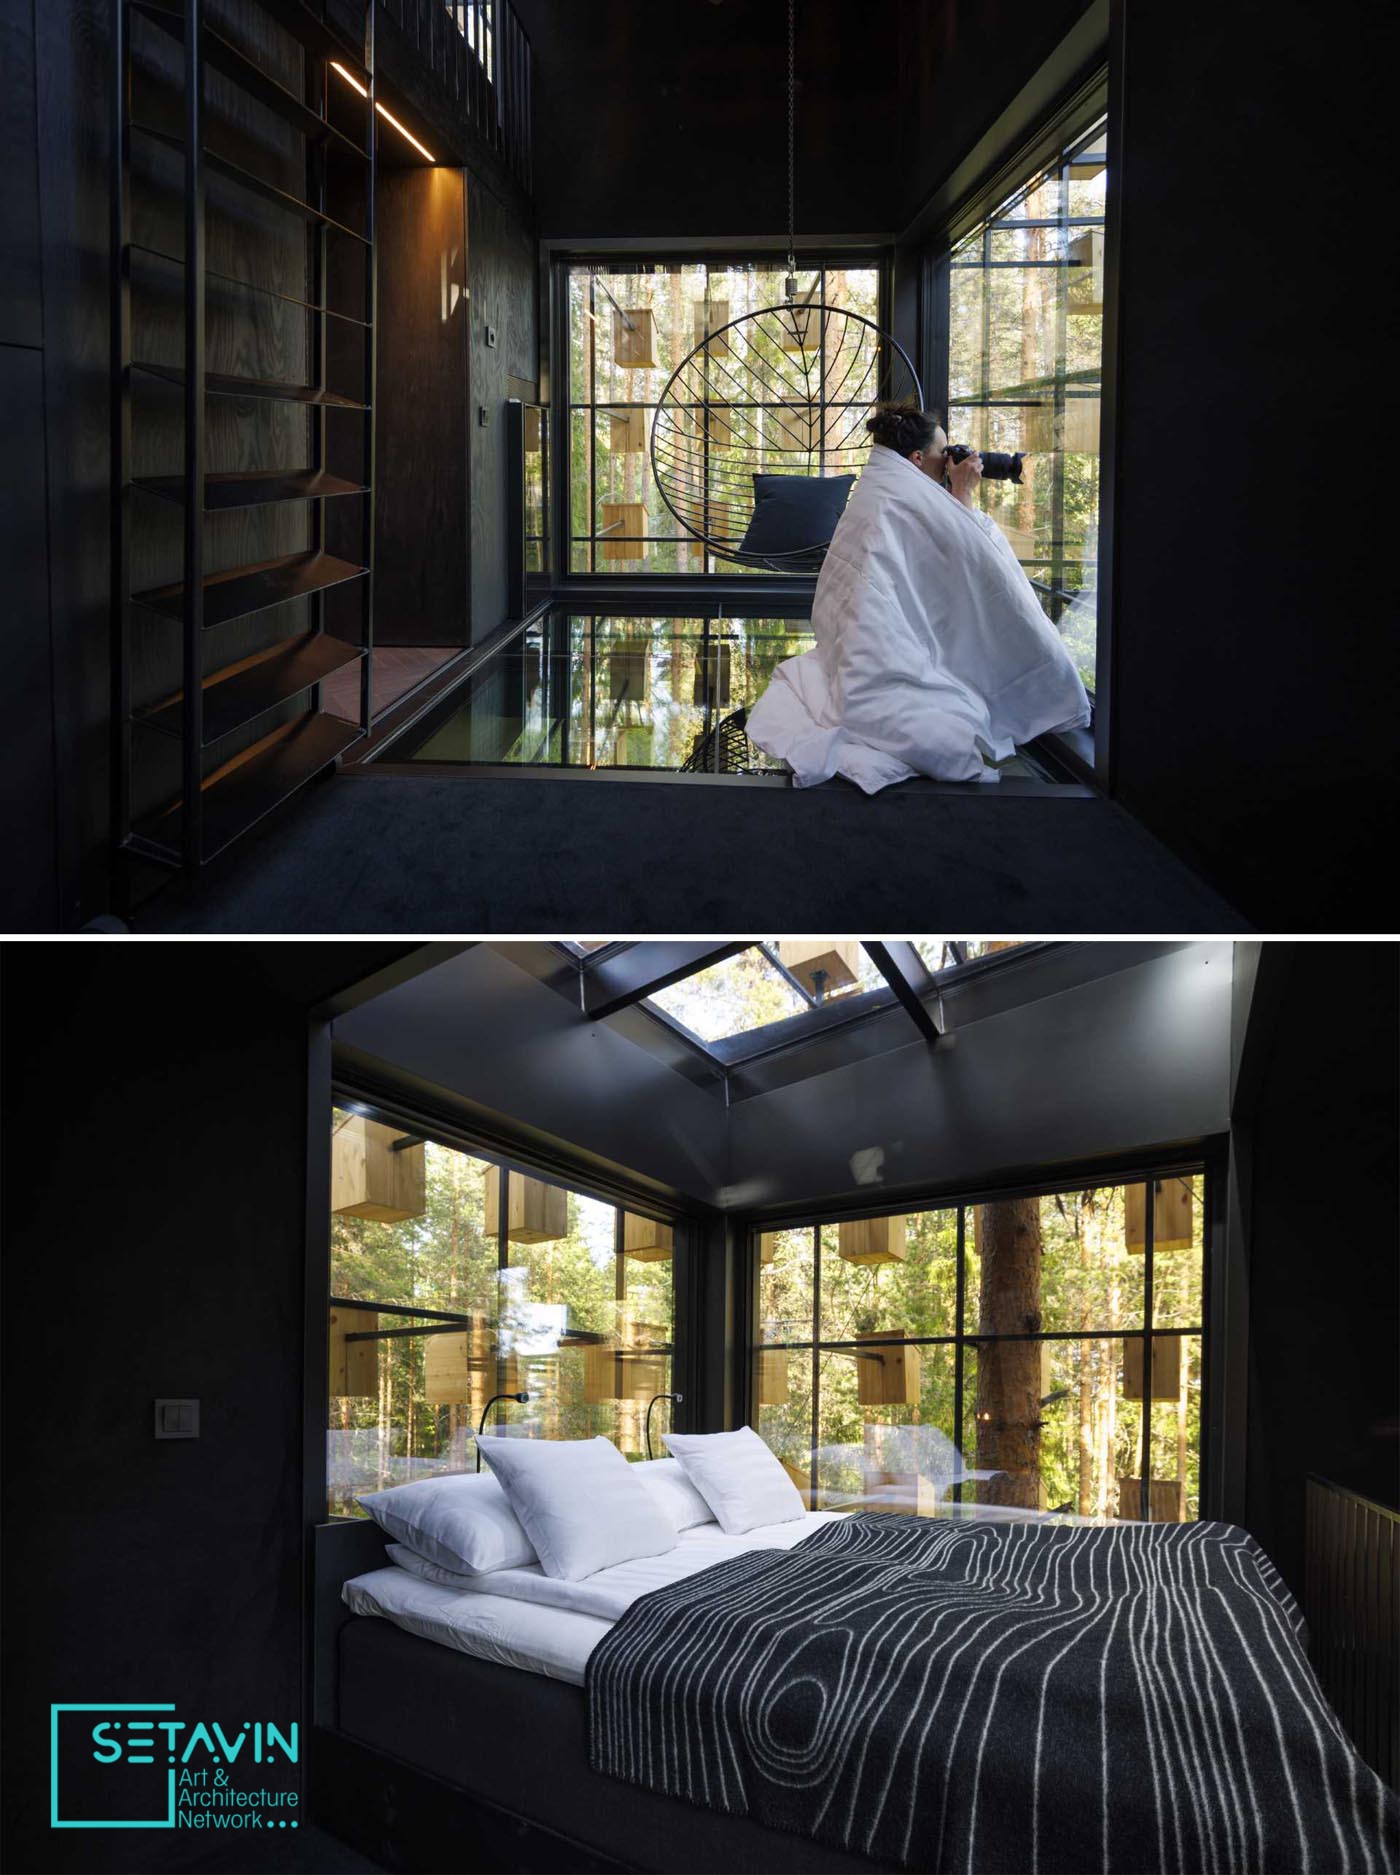 اتاق هتلی با 350 خانه پرنده در جنگلهای سوئد